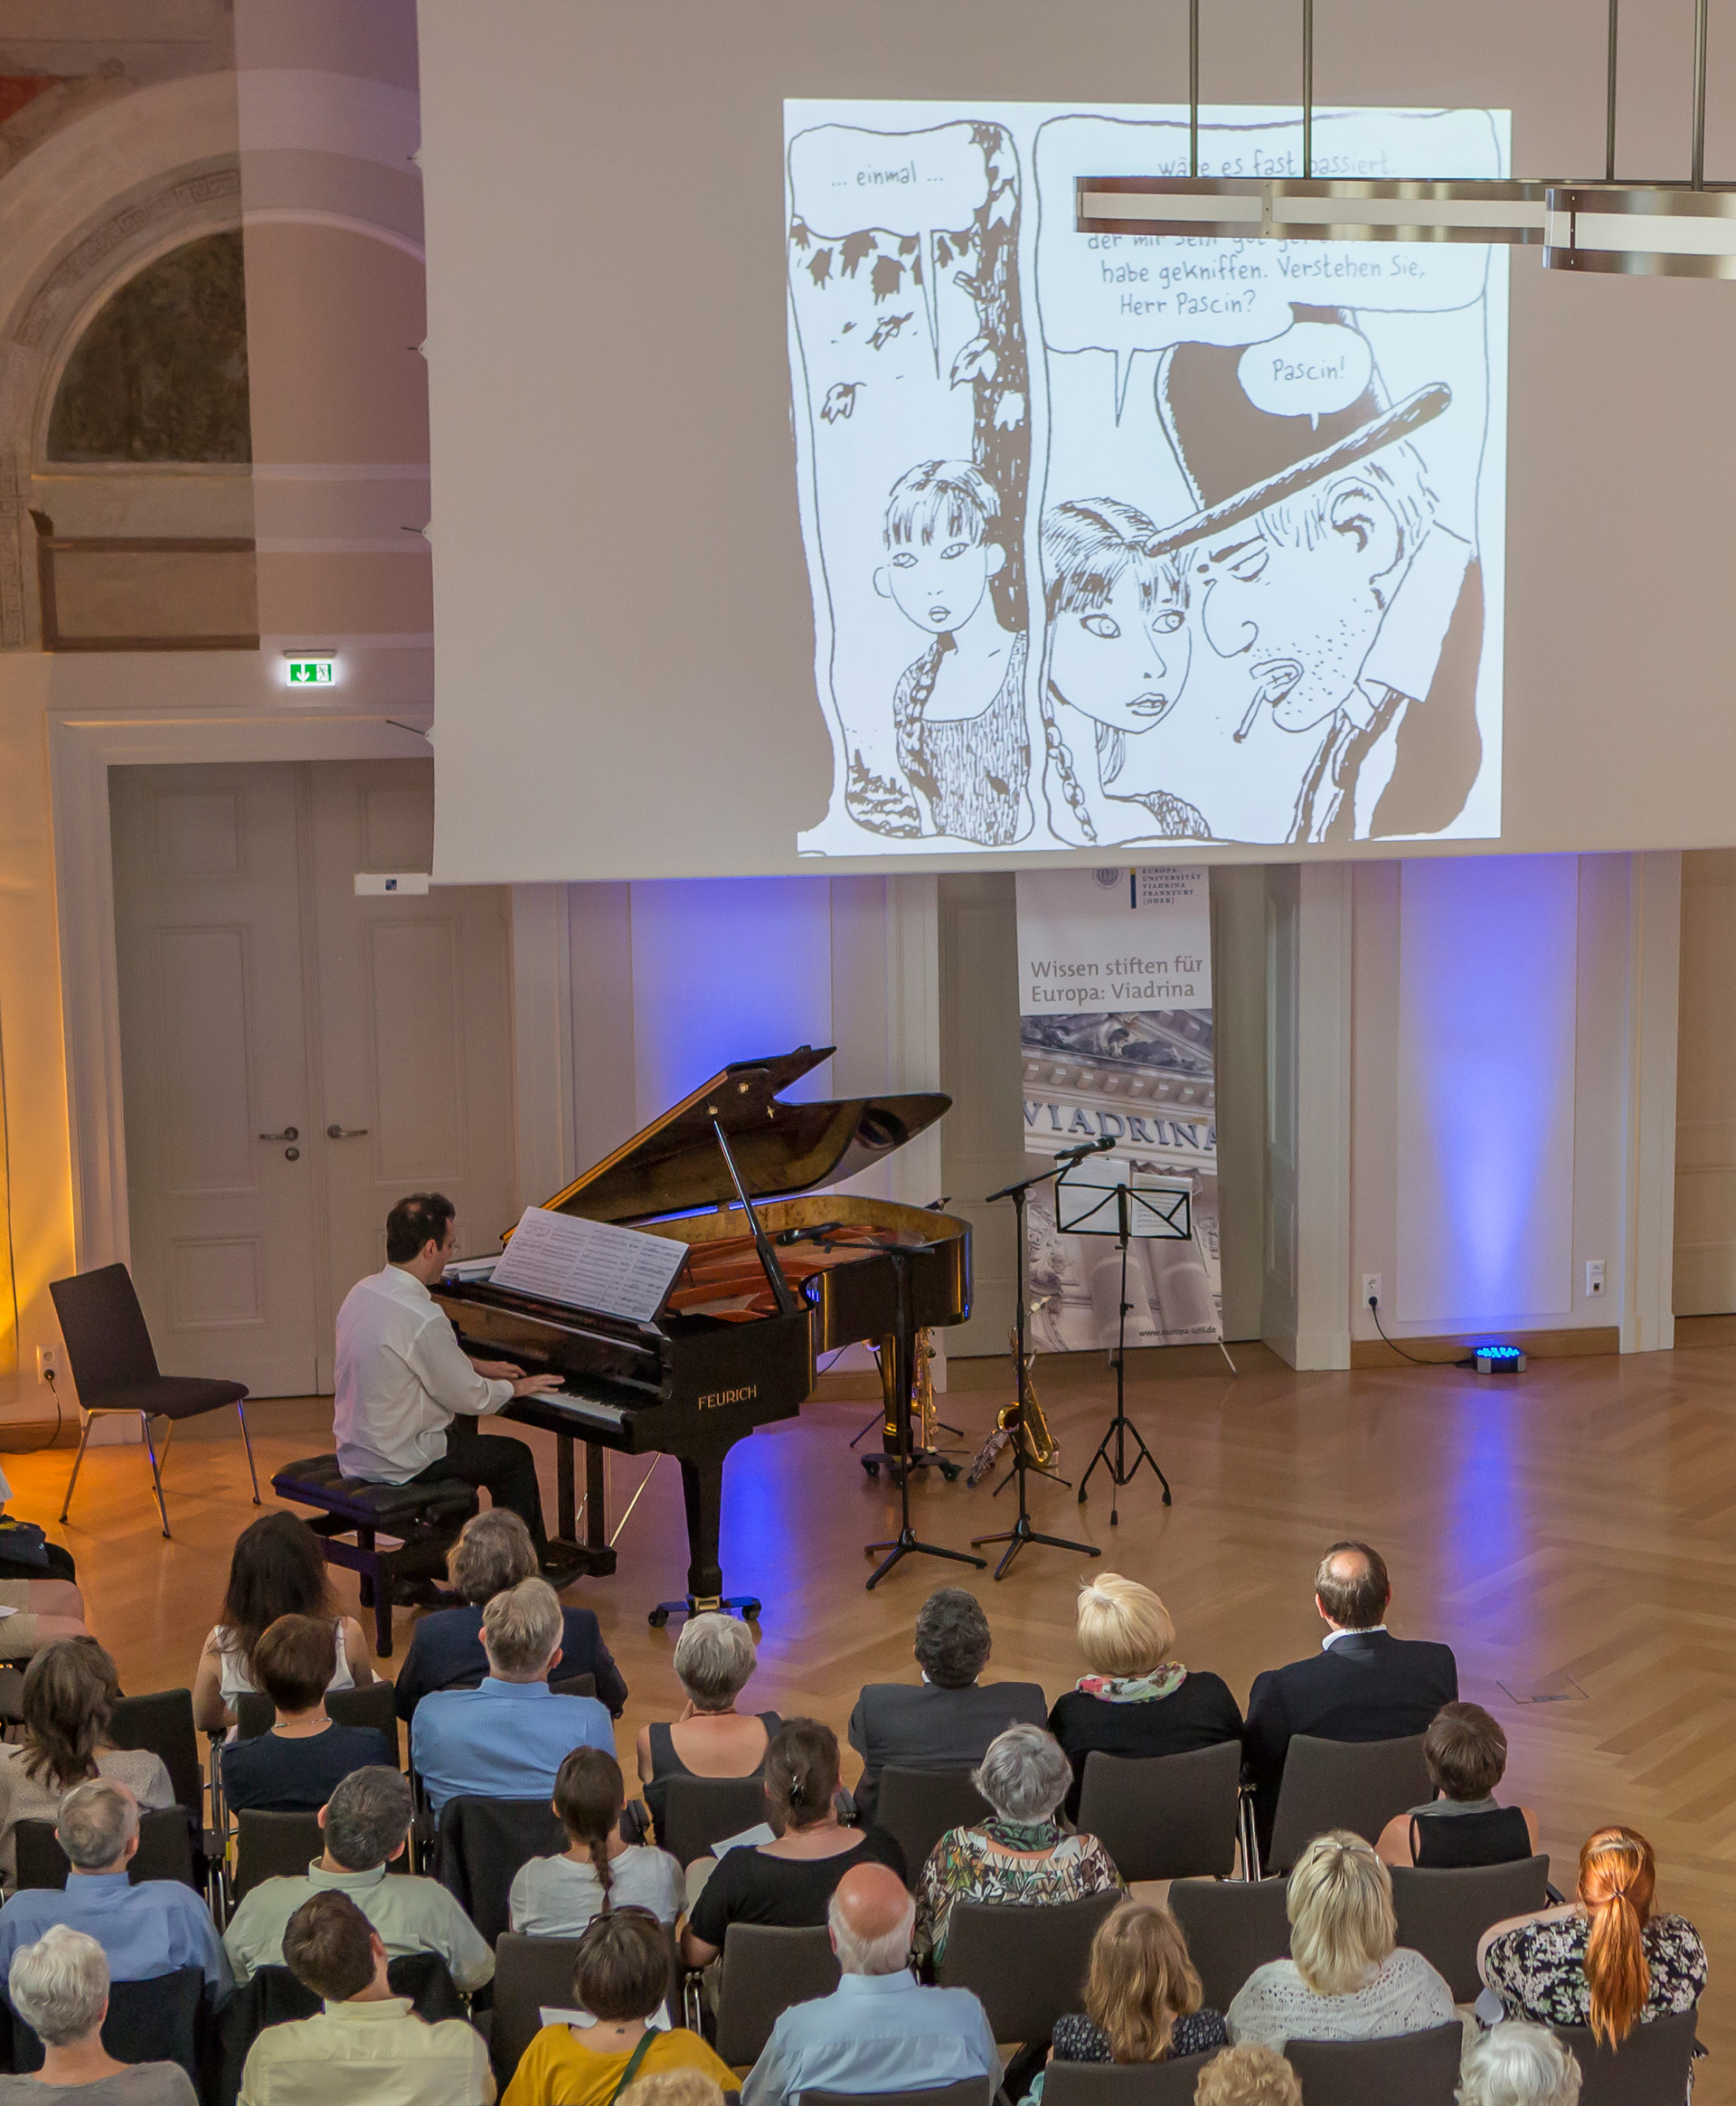 Foto: Pianist mit Publikum und Leinwand